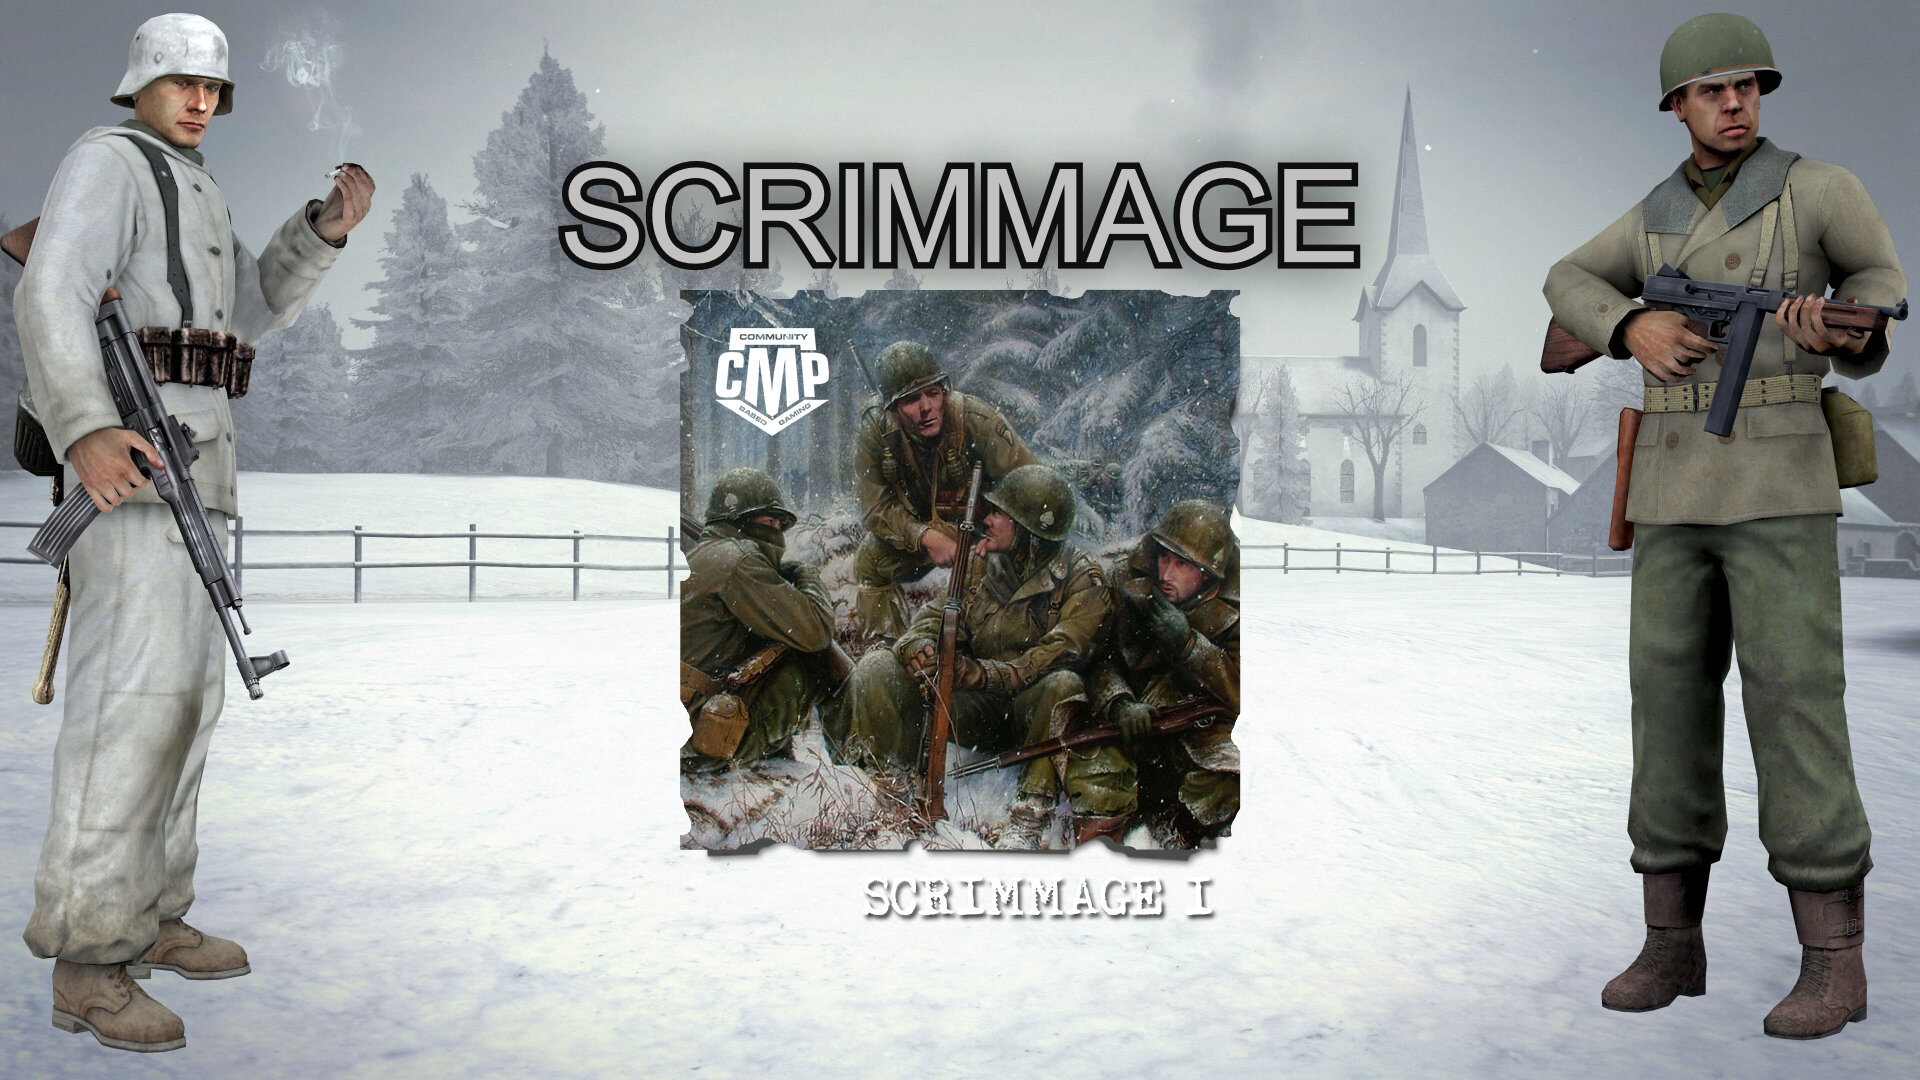 FH2 Campaign #15 - The Last Winter: Scrimmage